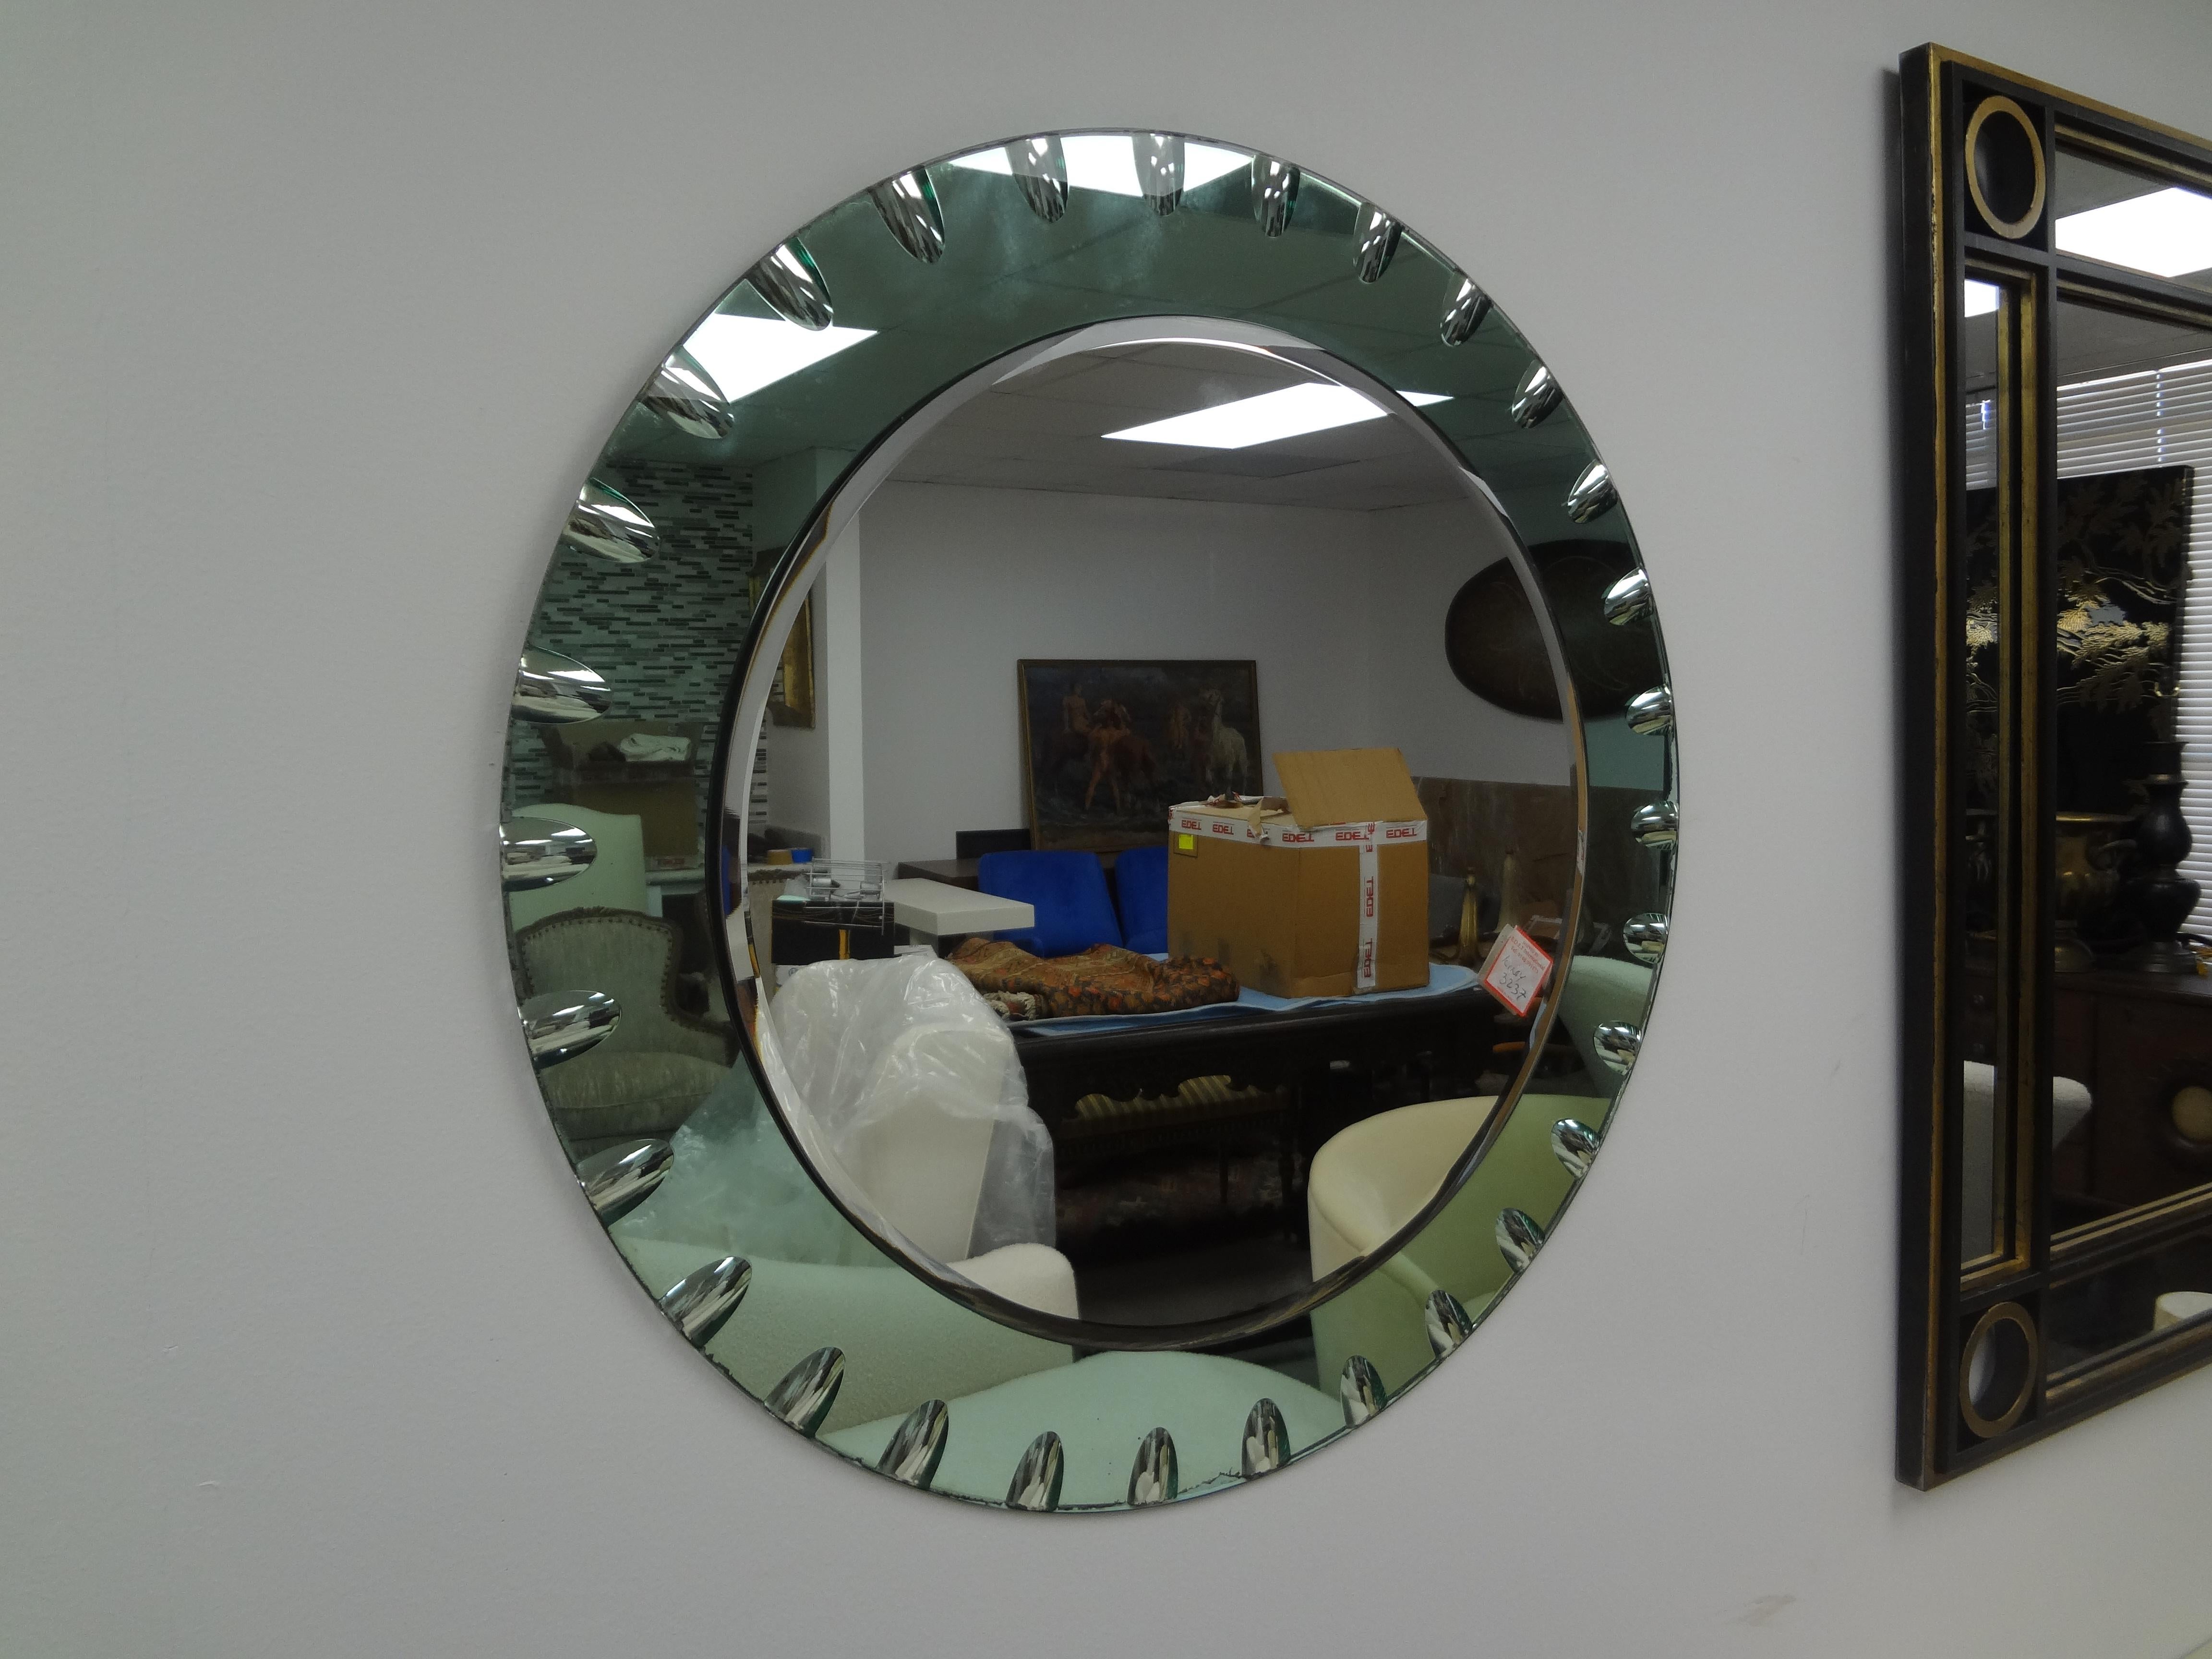 Miroir biseauté vert italien inspiré par Fontana Arte
Ce joli miroir de style Fontana Arte est orné d'un motif décoratif dentelé sur son pourtour.
Très inhabituel !